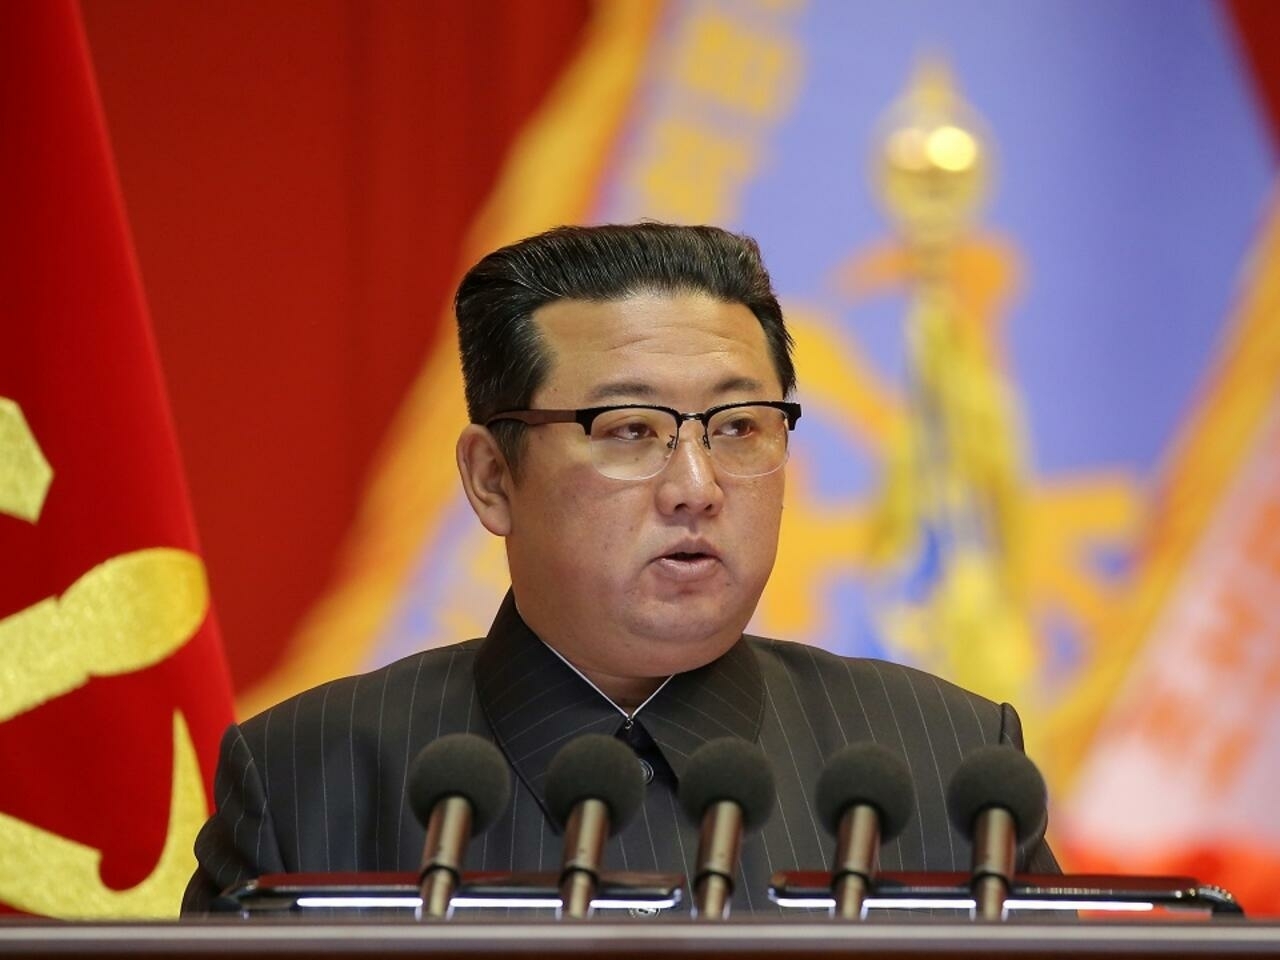 رئيس كوريا الشمالية يعلن اغلاقا عاما بعد تسجيل اول اصابة بفيروس (كورونا) في بلاده